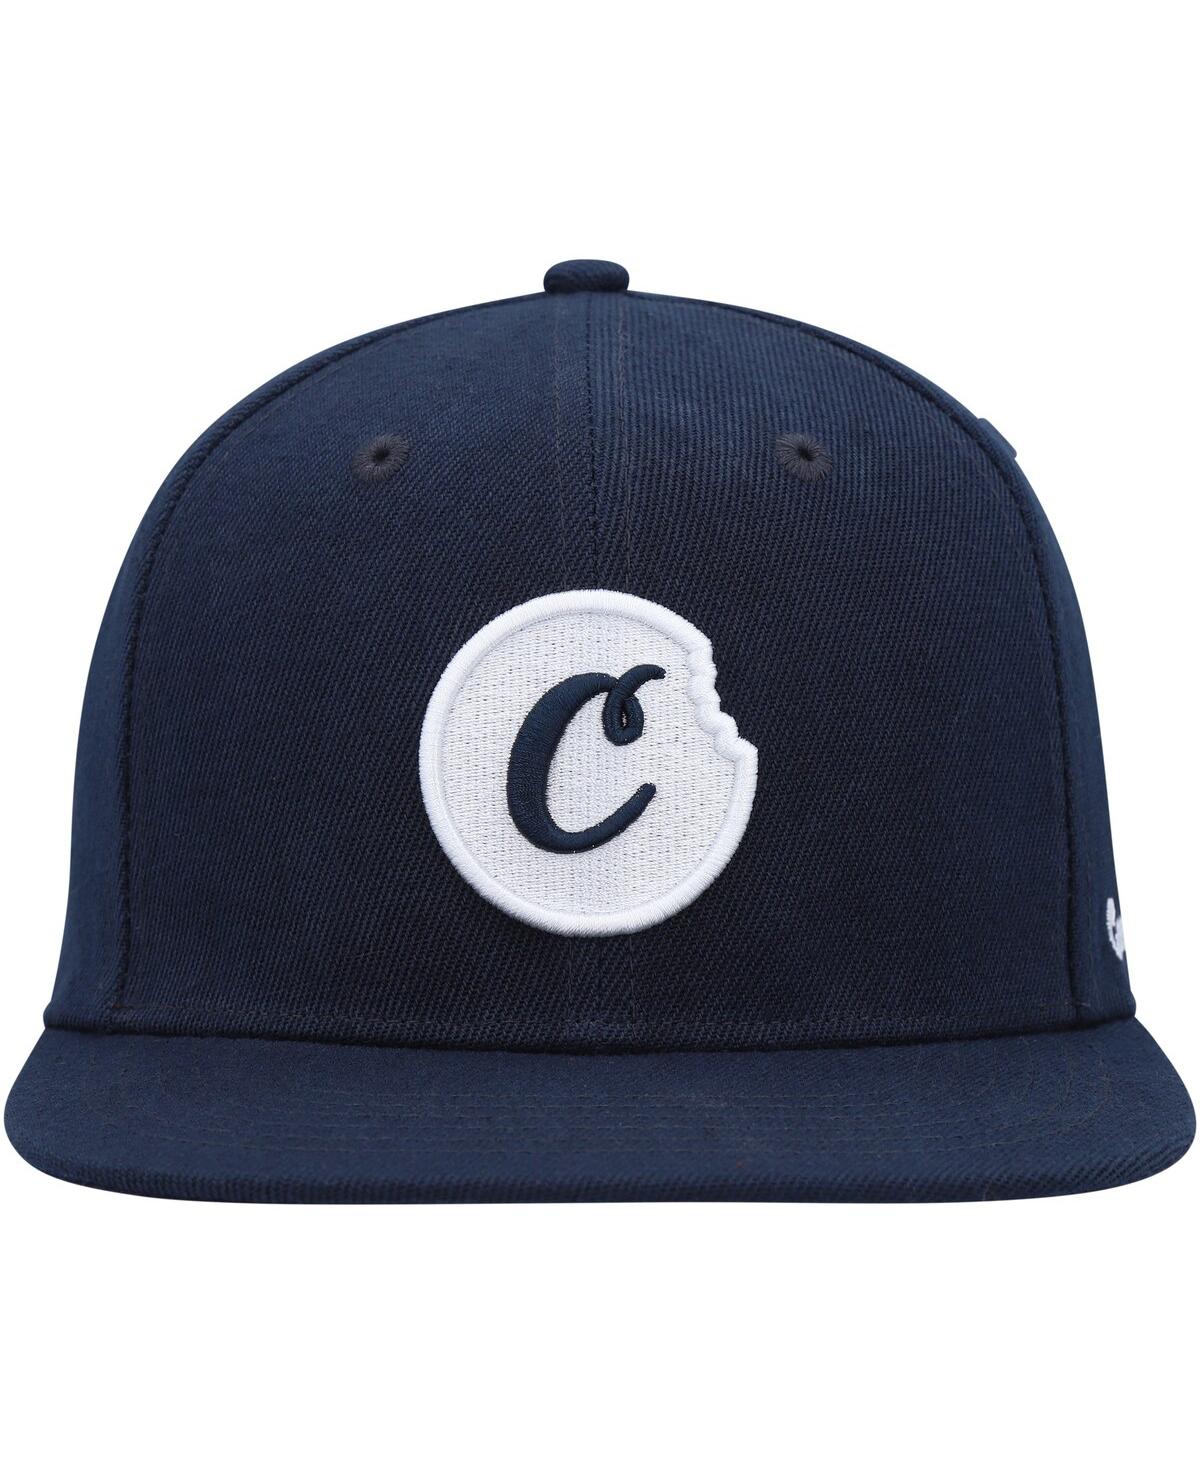 Shop Cookies Men's  Navy C-bite Snapback Hat